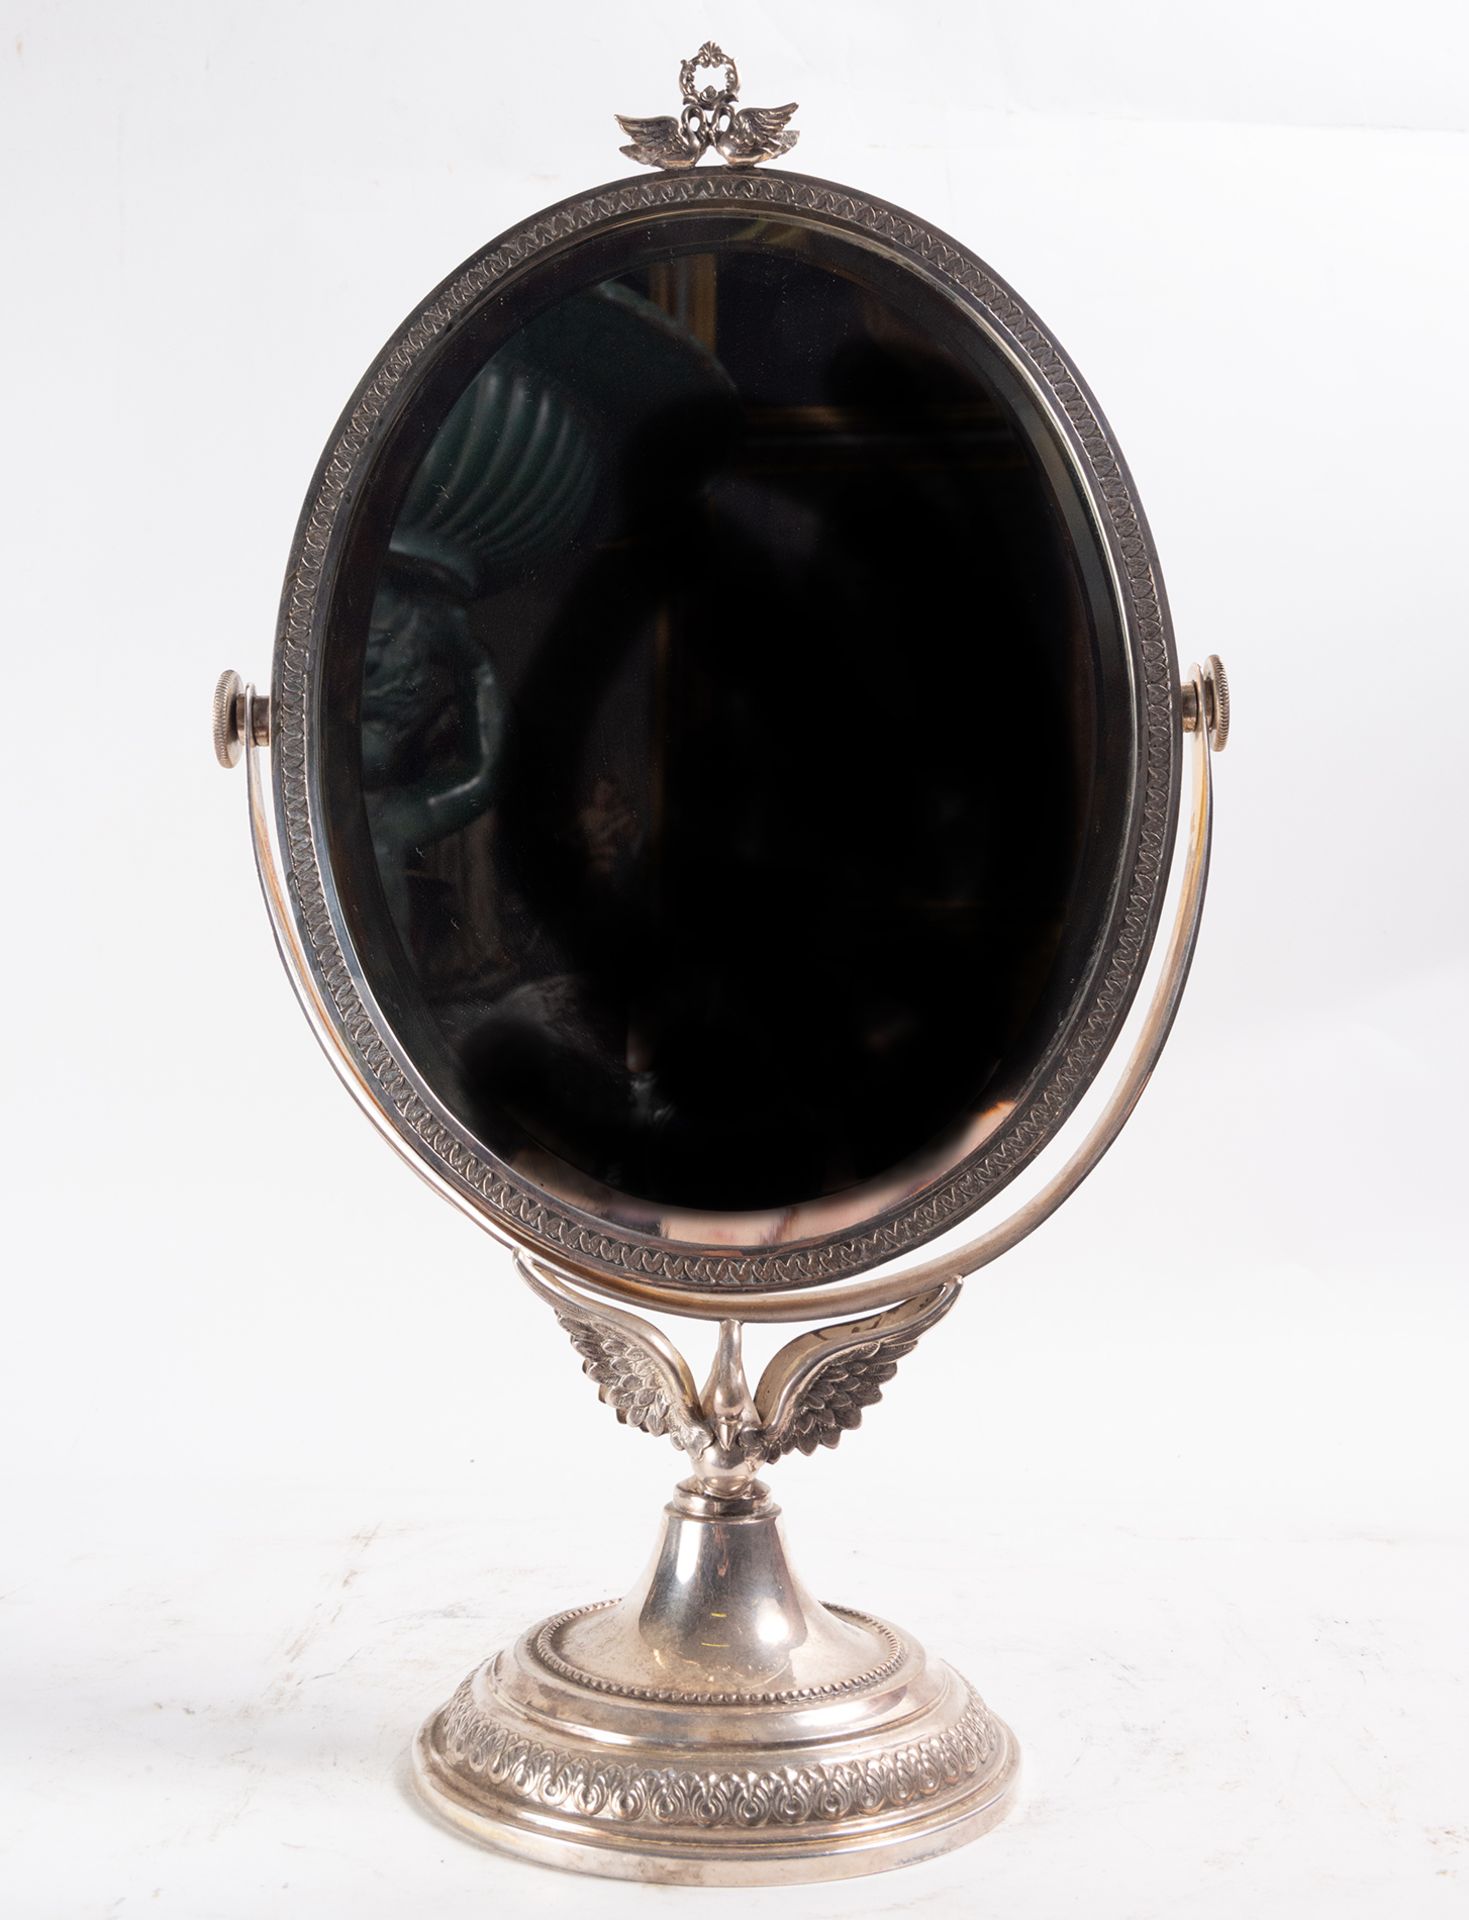 Empire style silver mirror, 19th century